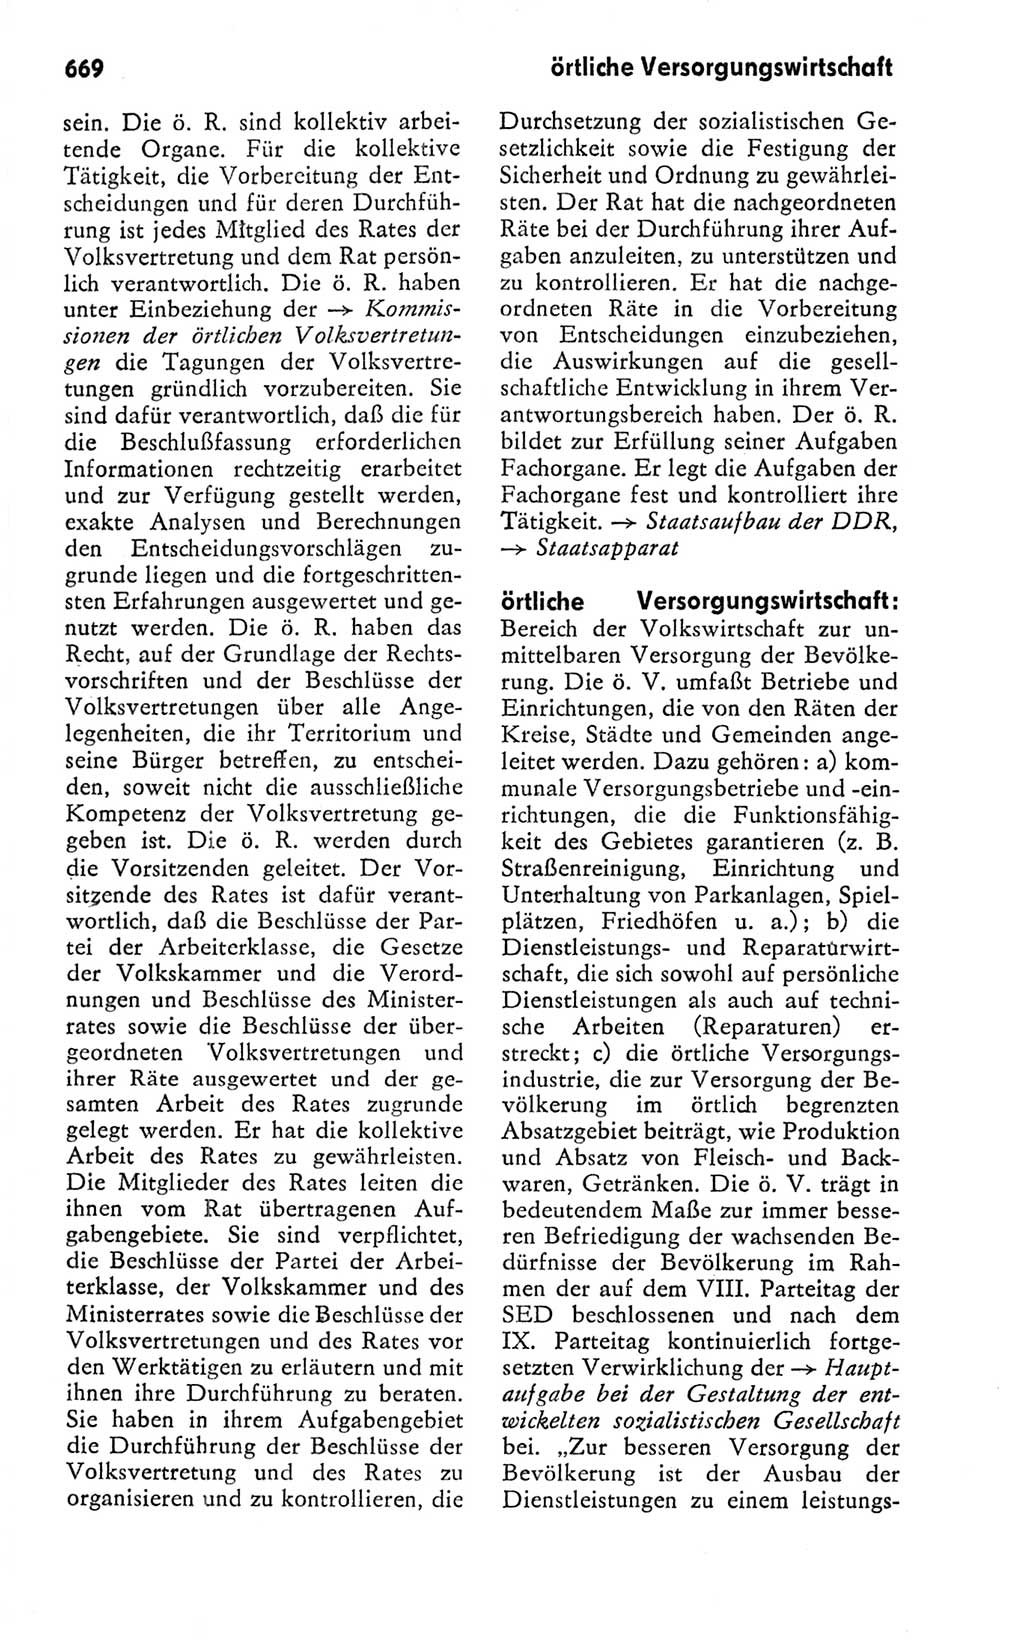 Kleines politisches Wörterbuch [Deutsche Demokratische Republik (DDR)] 1978, Seite 669 (Kl. pol. Wb. DDR 1978, S. 669)